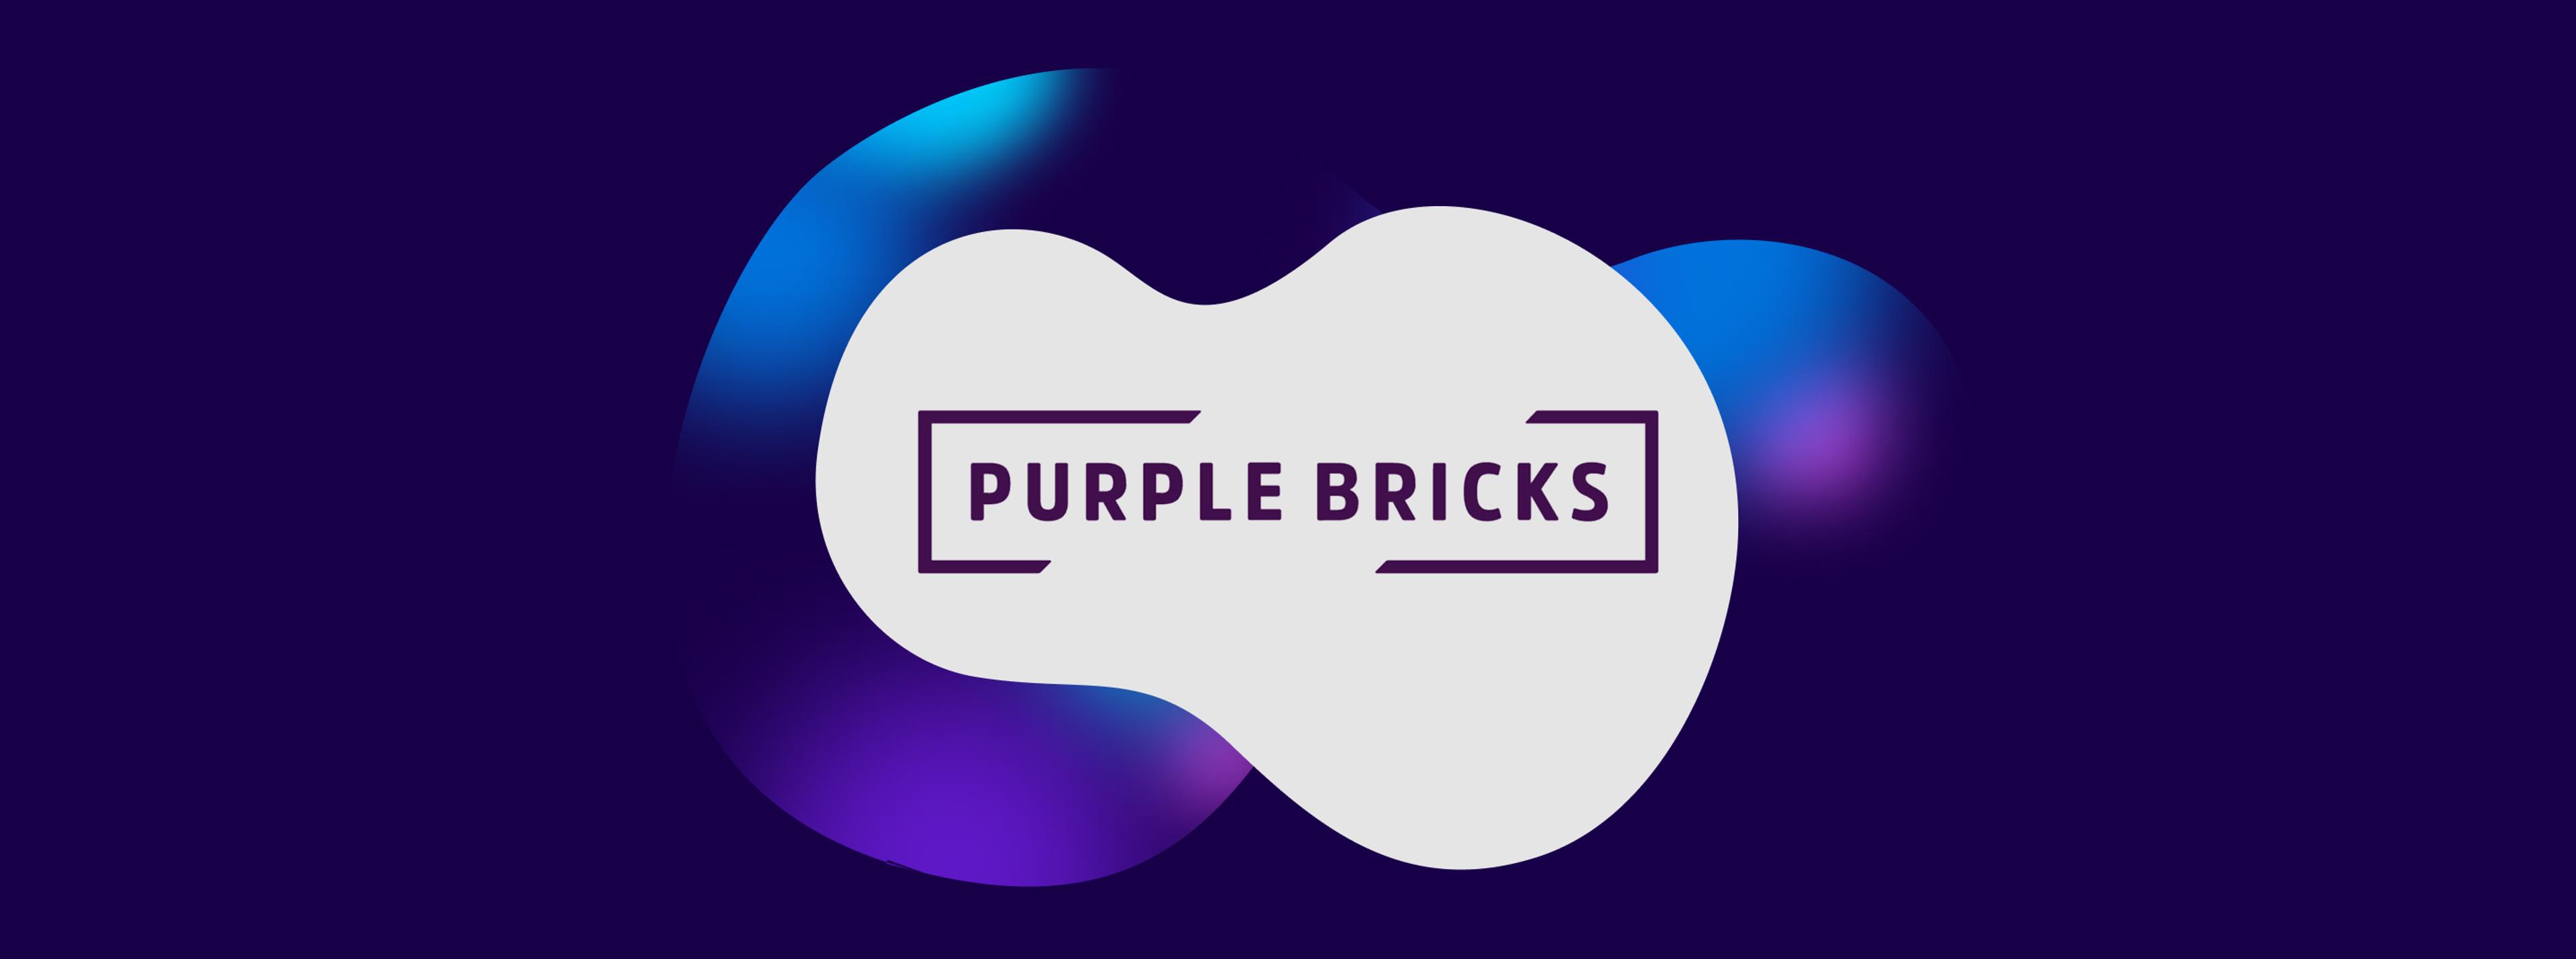 Purplebricks logo on white background with a dark blue blob in the background